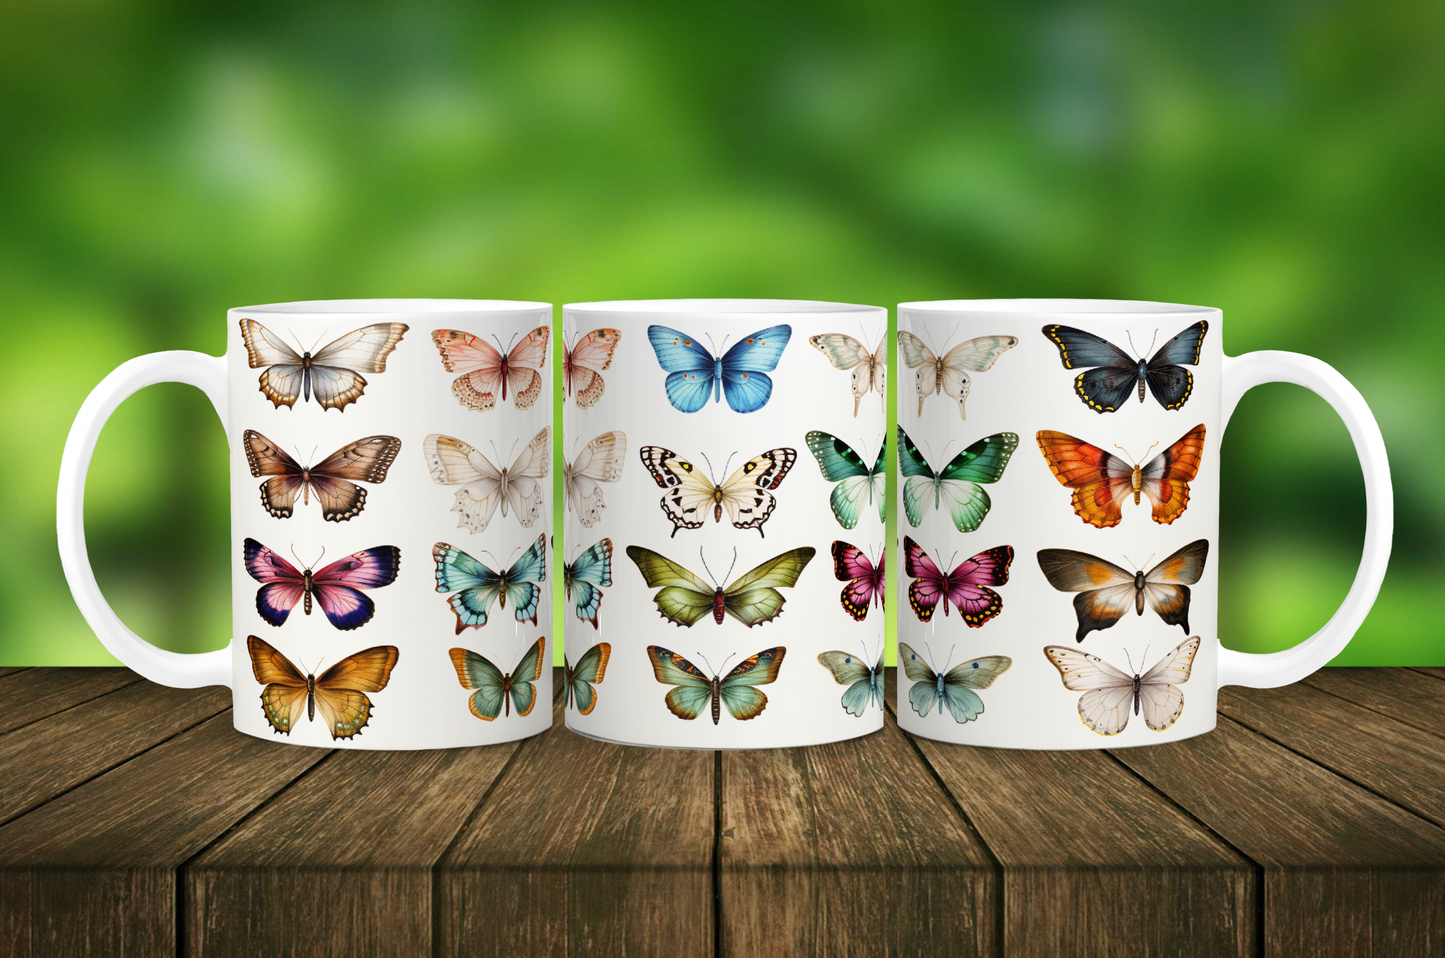 Butterfly Mug - 11pz Ceramic Mug